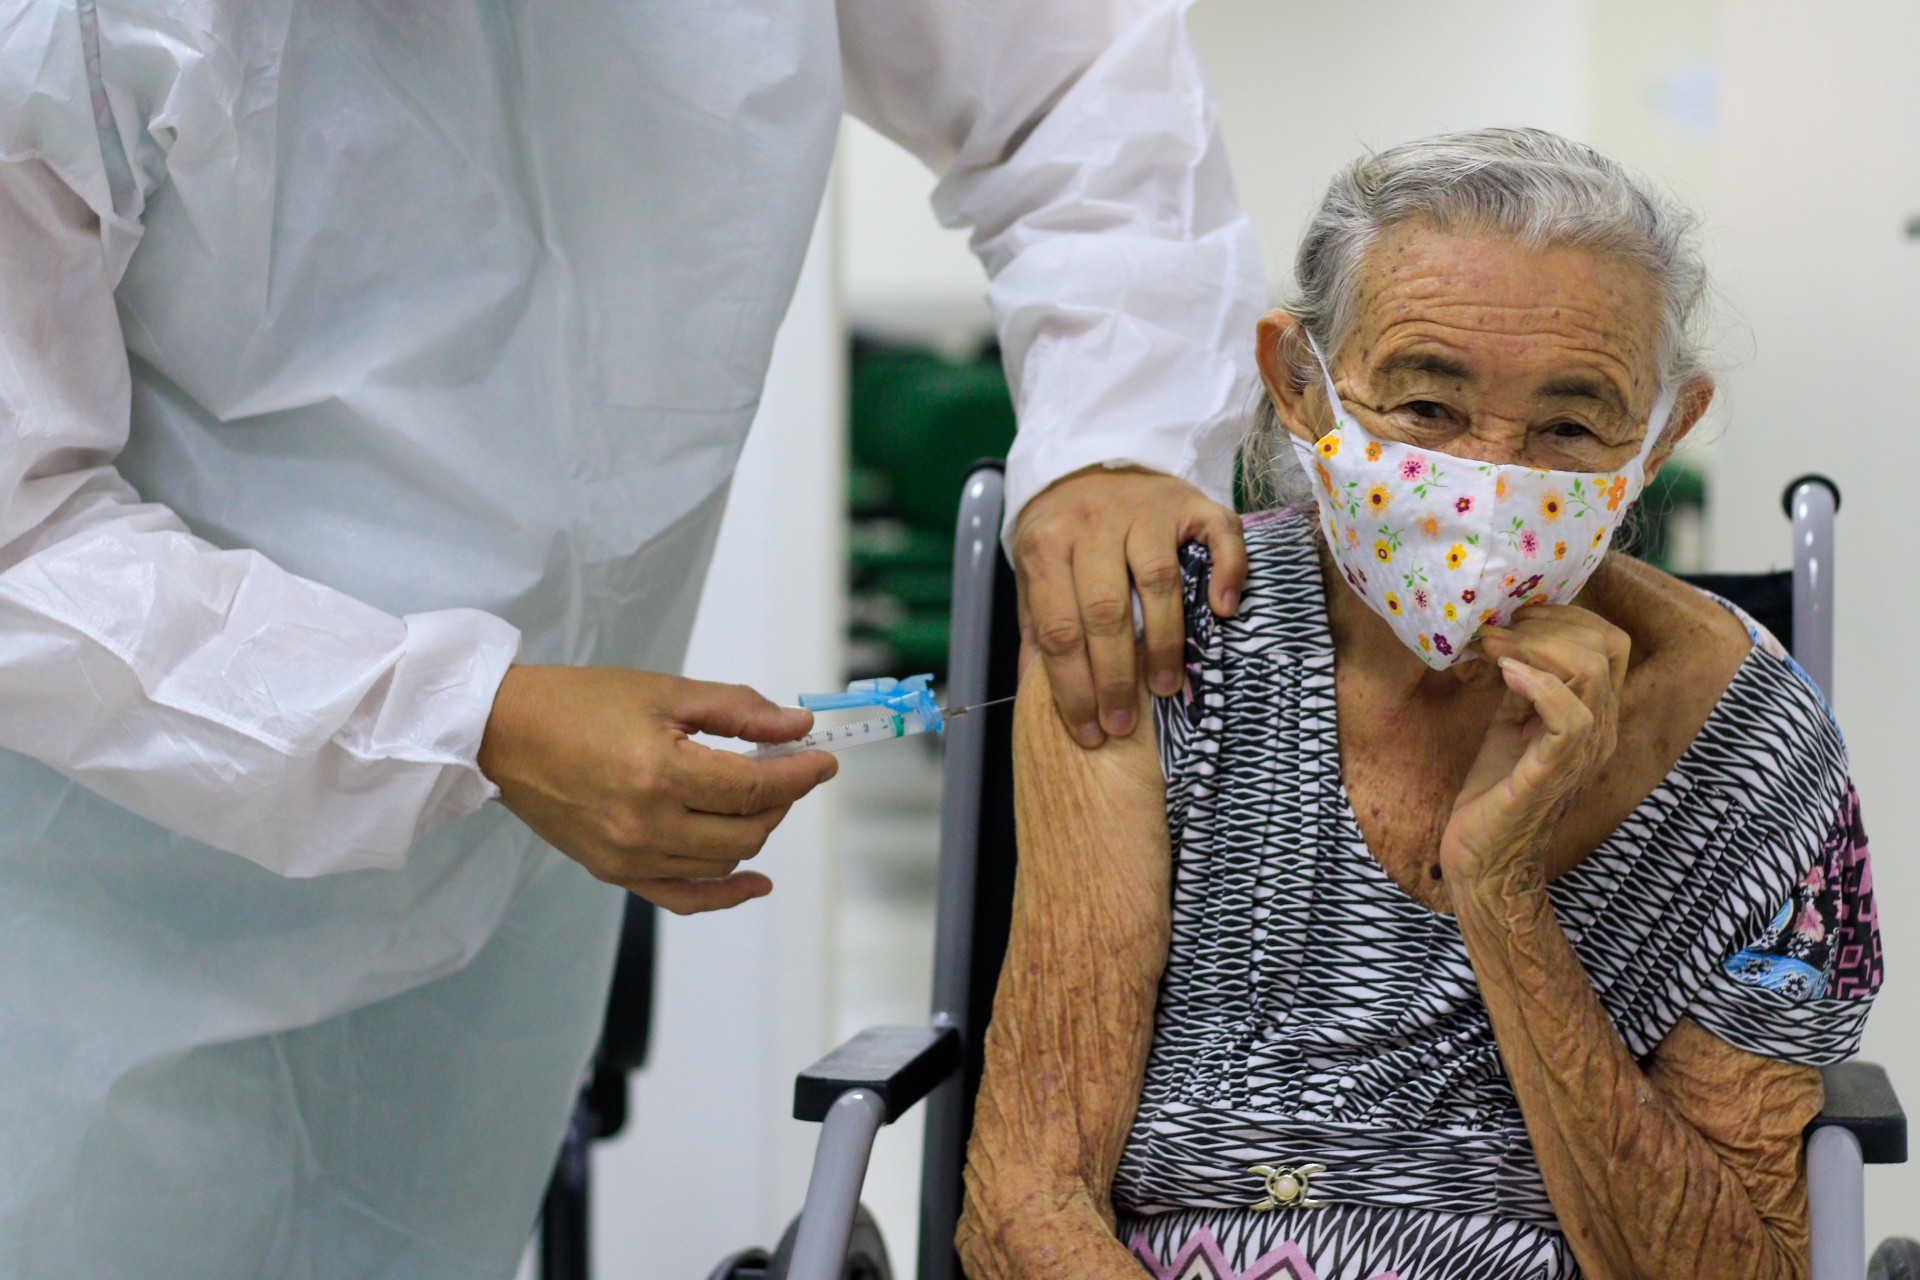 EM FORTALEZA, a segunda etapa de imunização teve início no dia 22 último (Foto: BARBARA MOIRA)